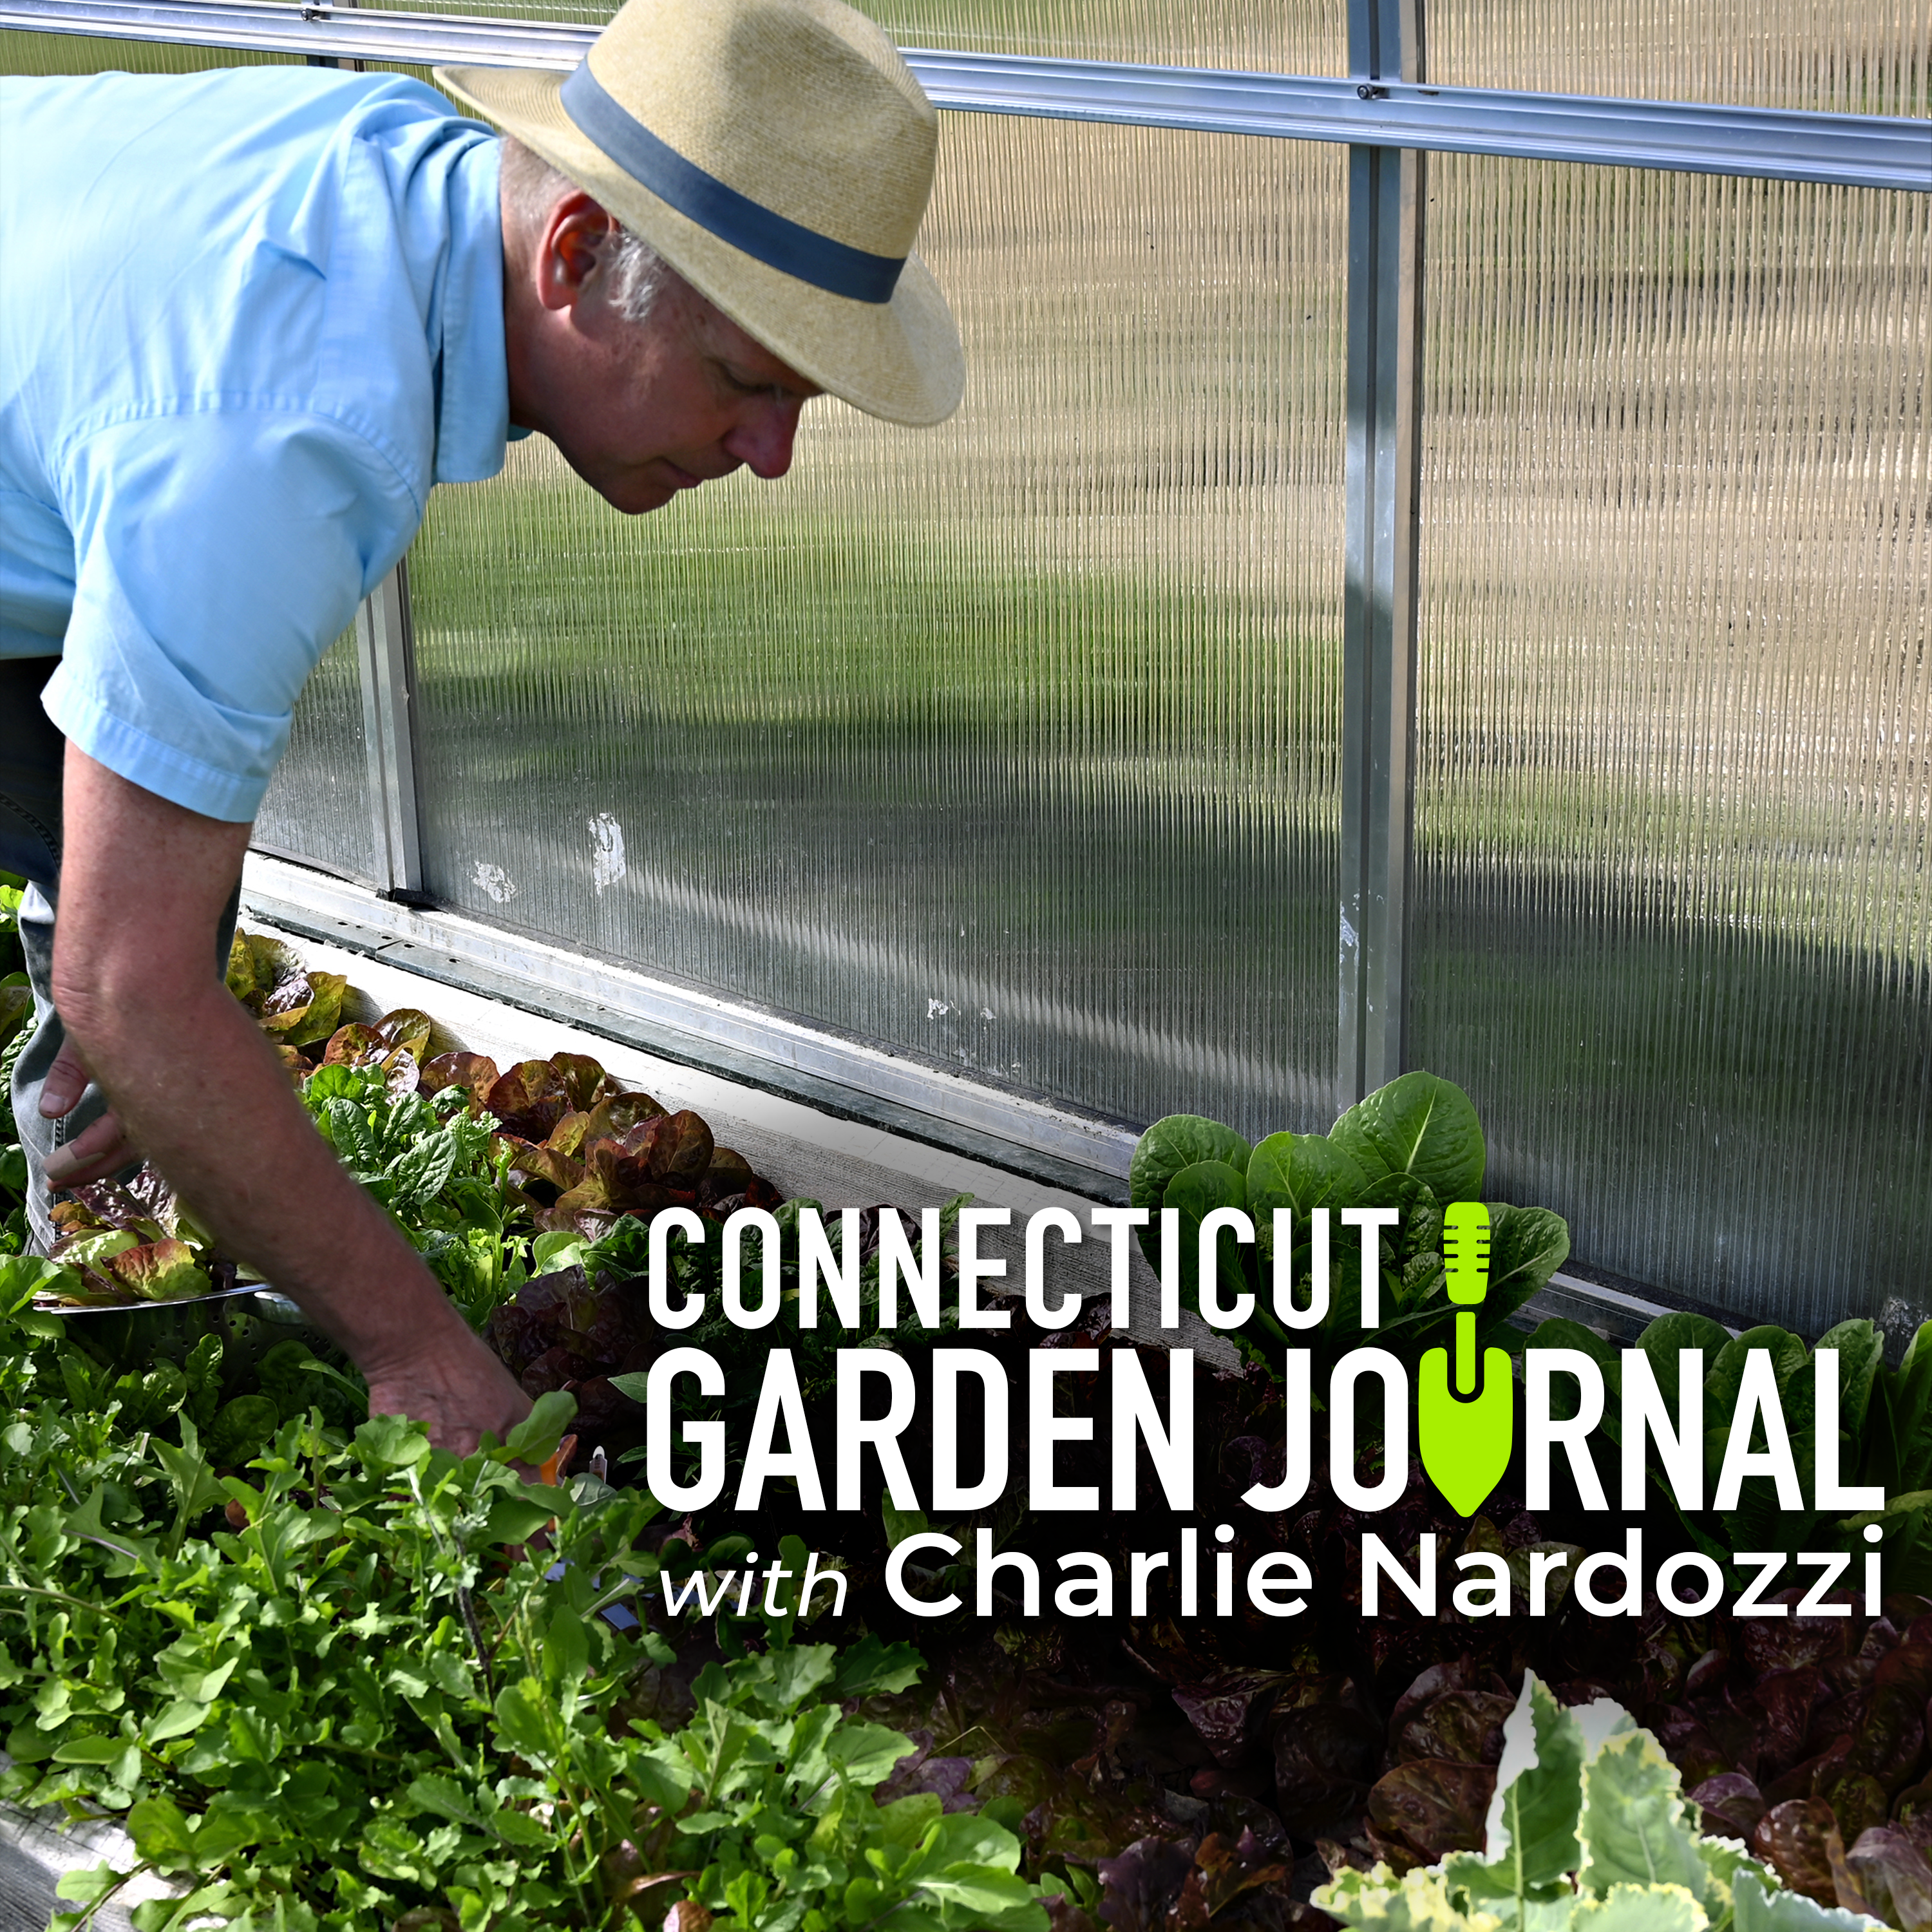 Connecticut Garden Journal: The three keys to growing indoor greens